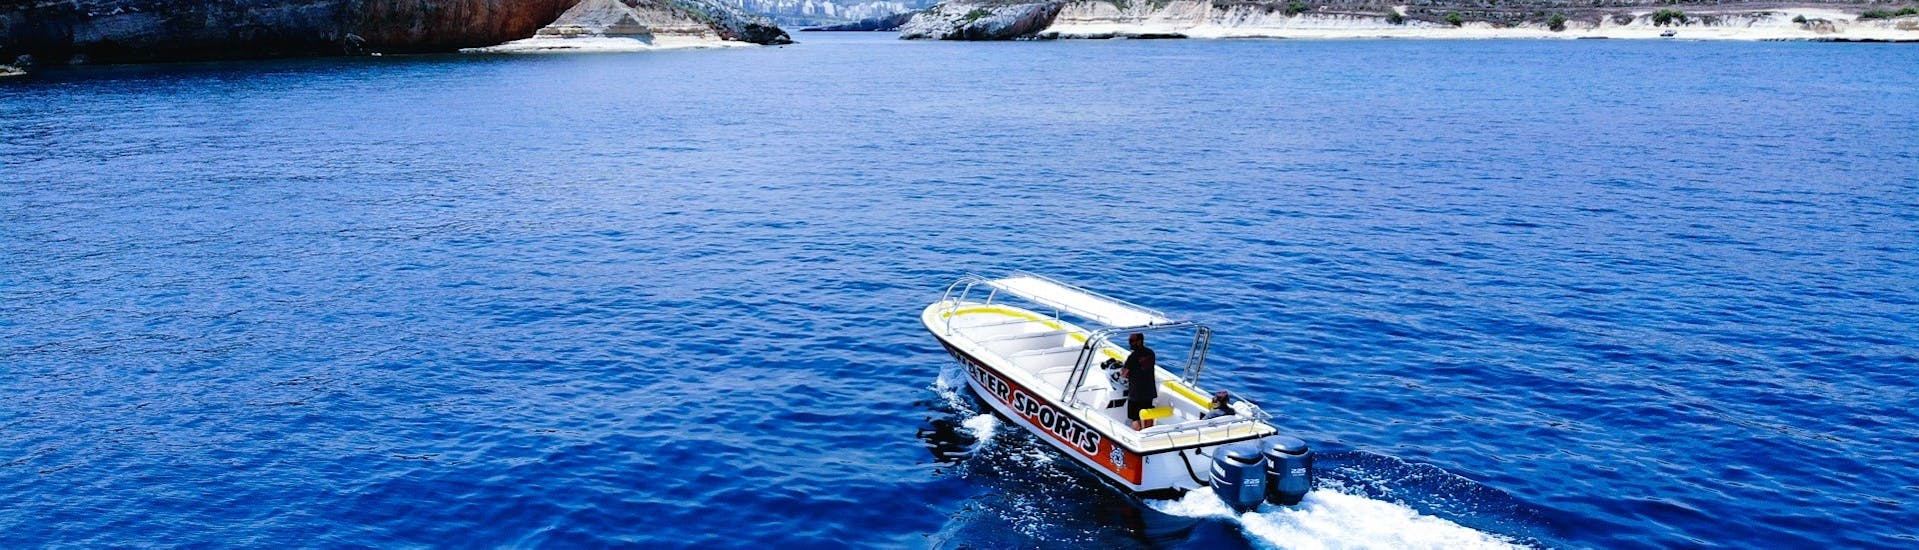 Balade en bateau - Qawra avec Baignade & Visites touristiques.